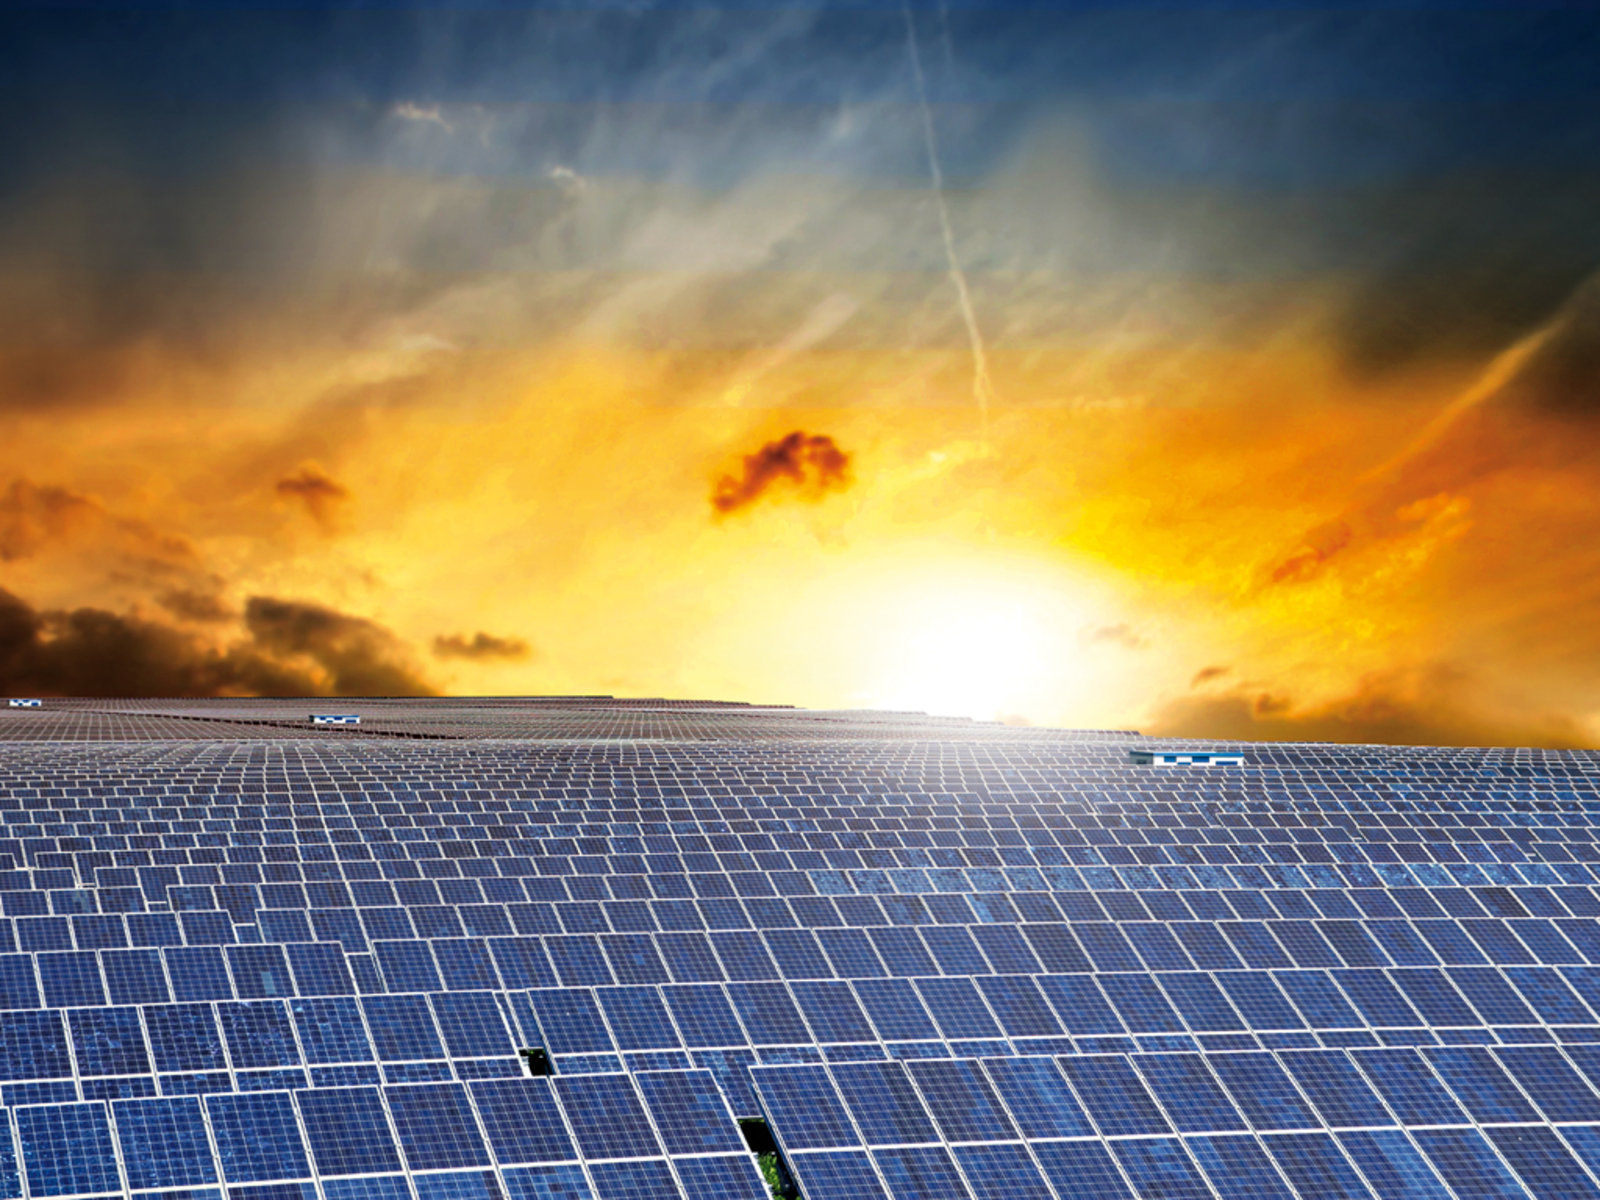 2016 acabará con 295GW de capacidad en energía solar fotovoltaica